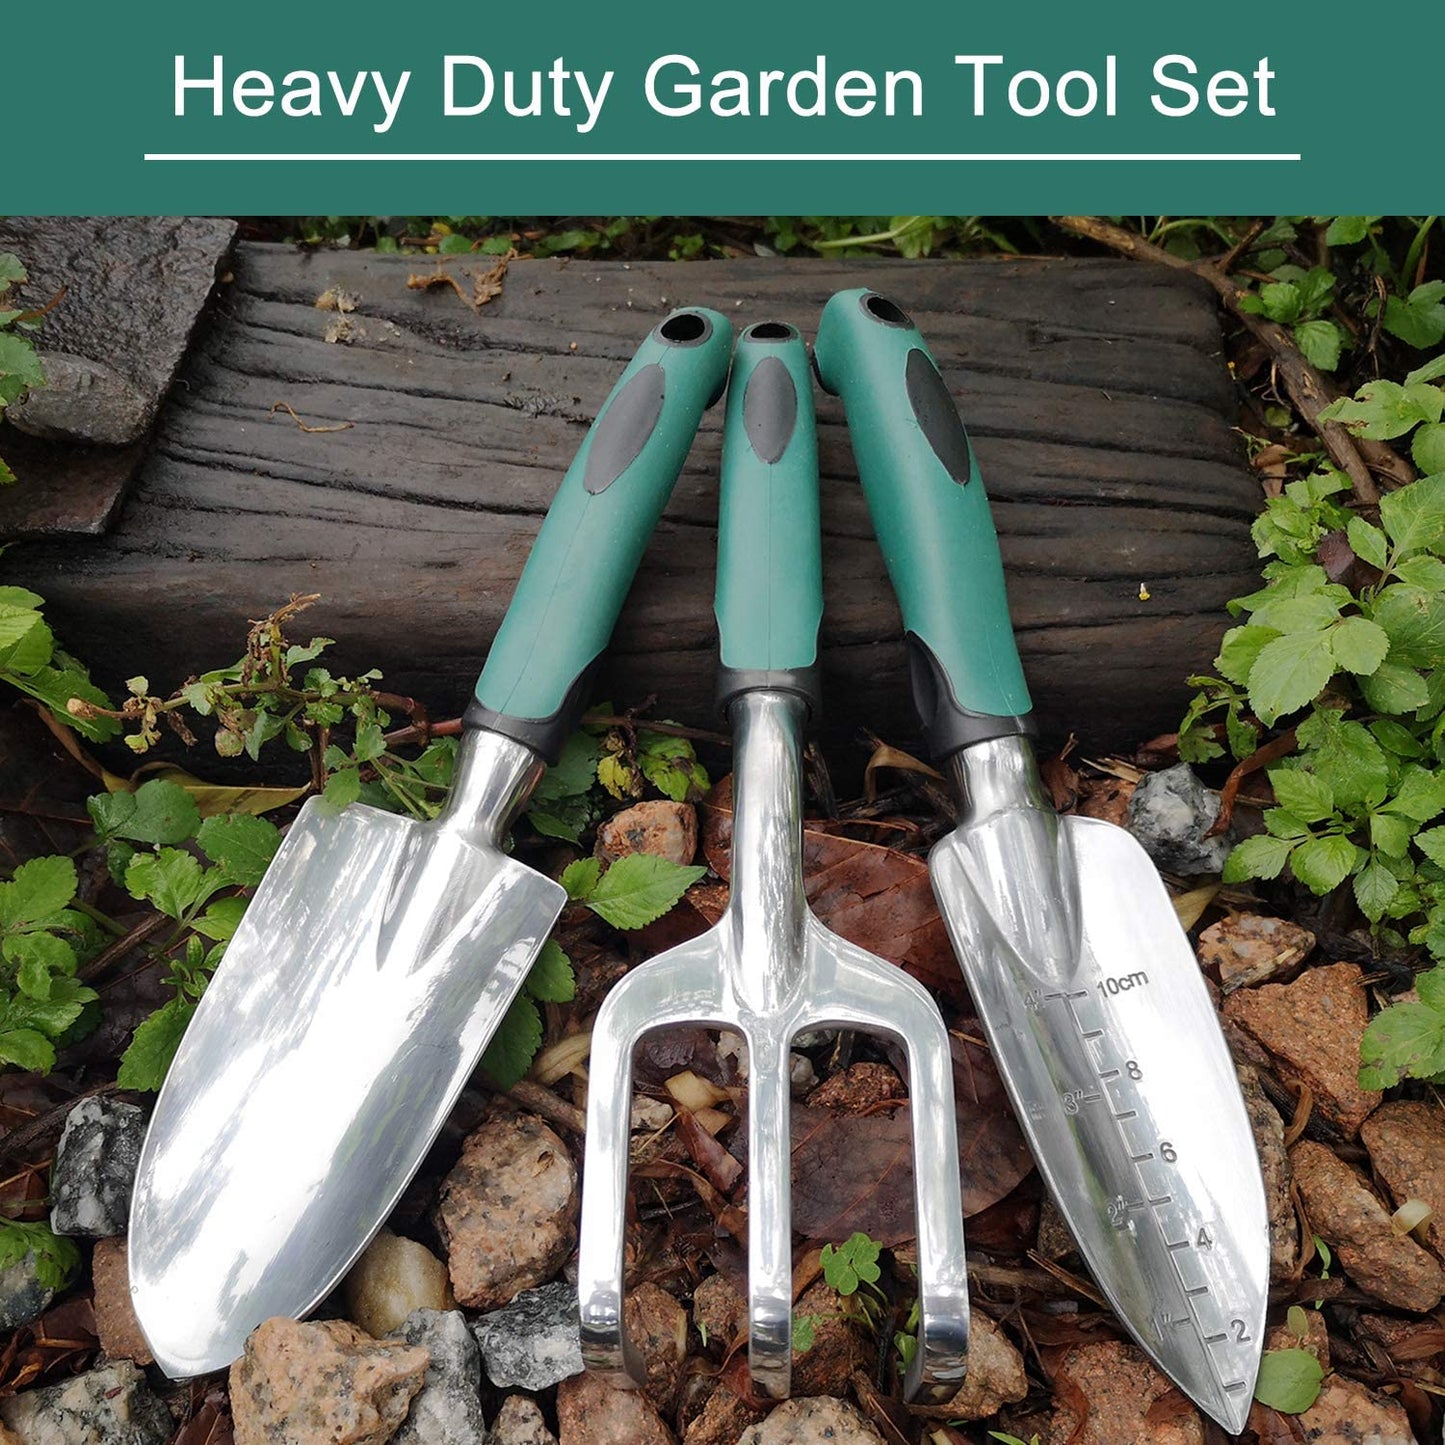 FANHAO Heavy Duty Garden 3 Pieces Tool Set